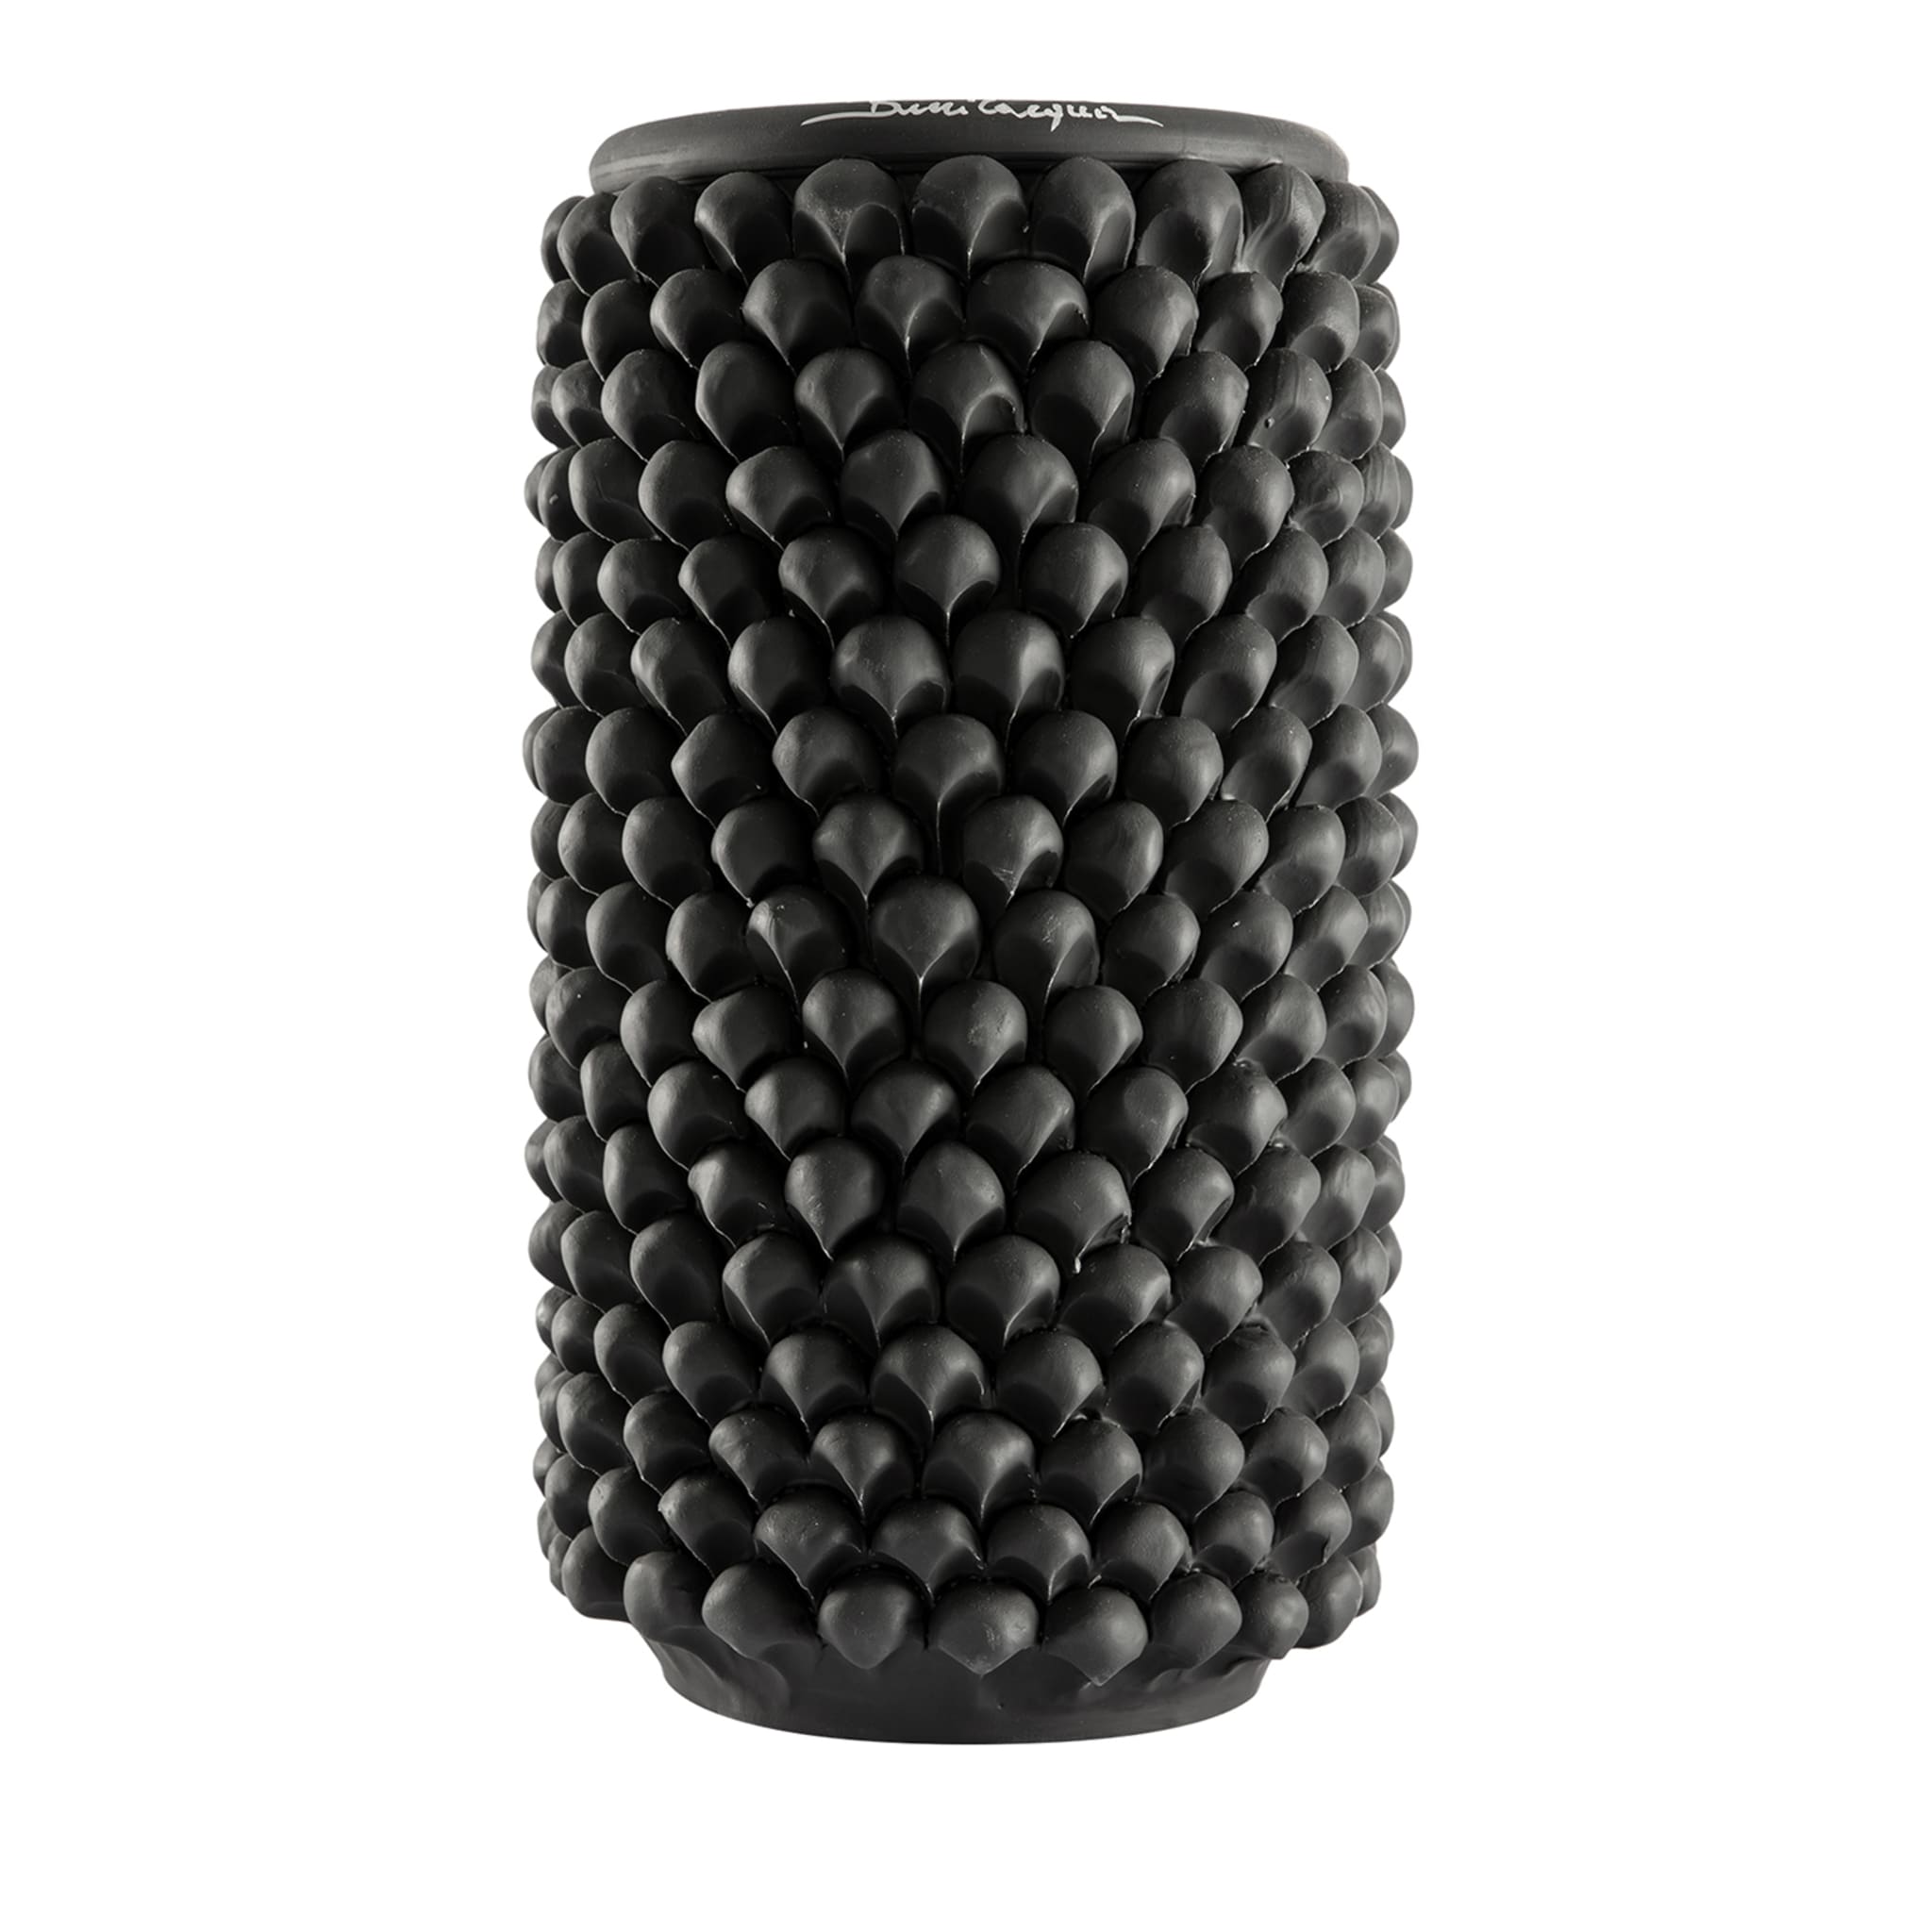 Zylindrische Vase aus schwarzer Keramik - Hauptansicht